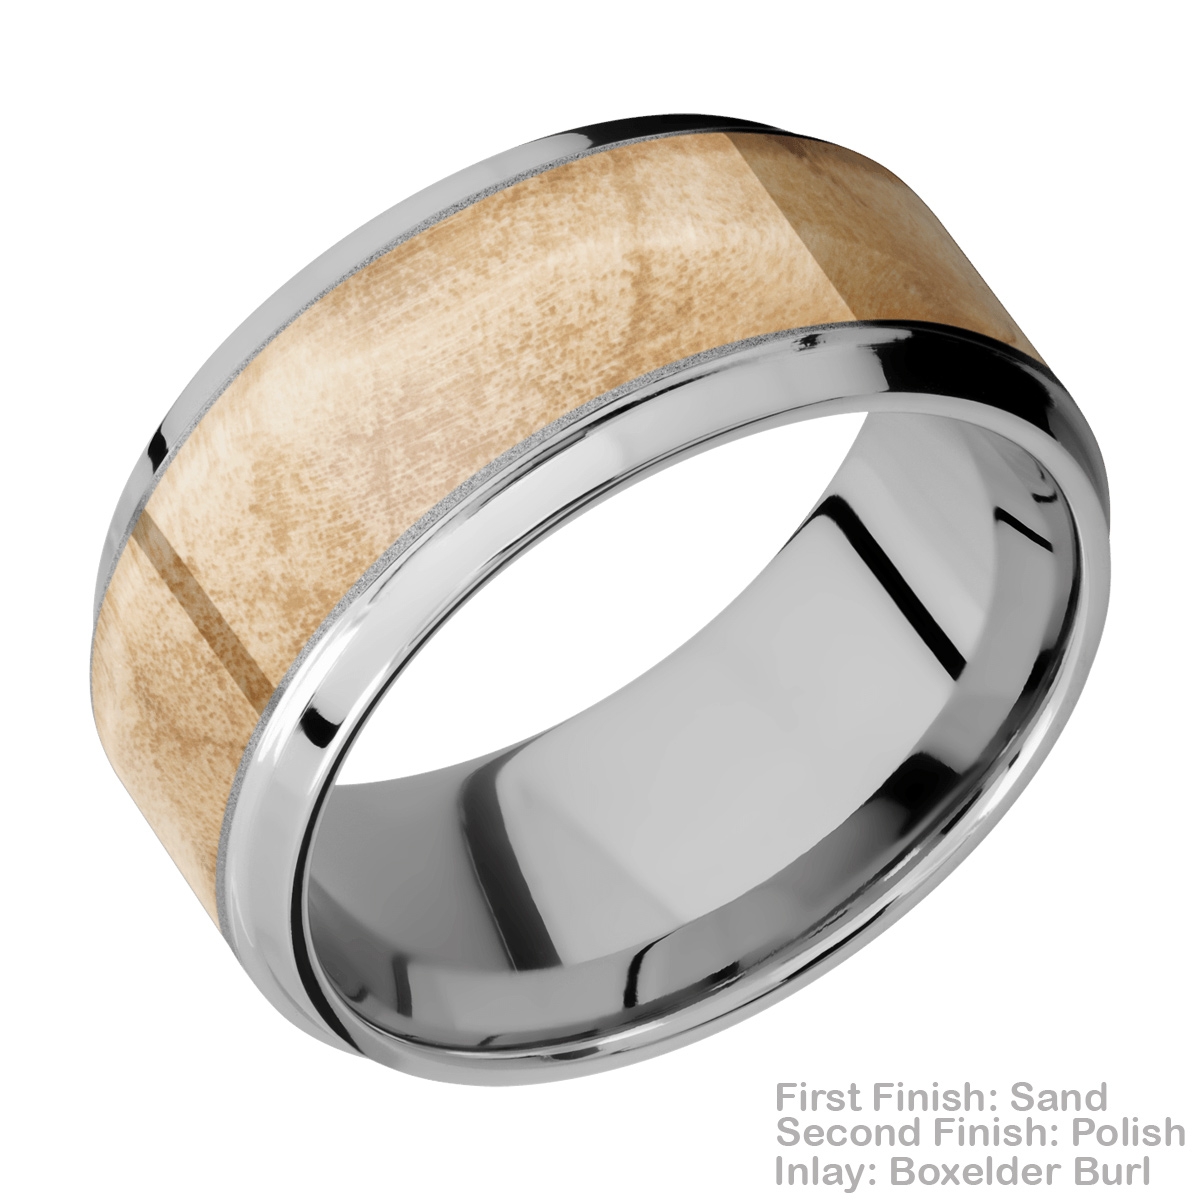 Lashbrook 10B17(S)/HARDWOOD Titanium Wedding Ring or Band